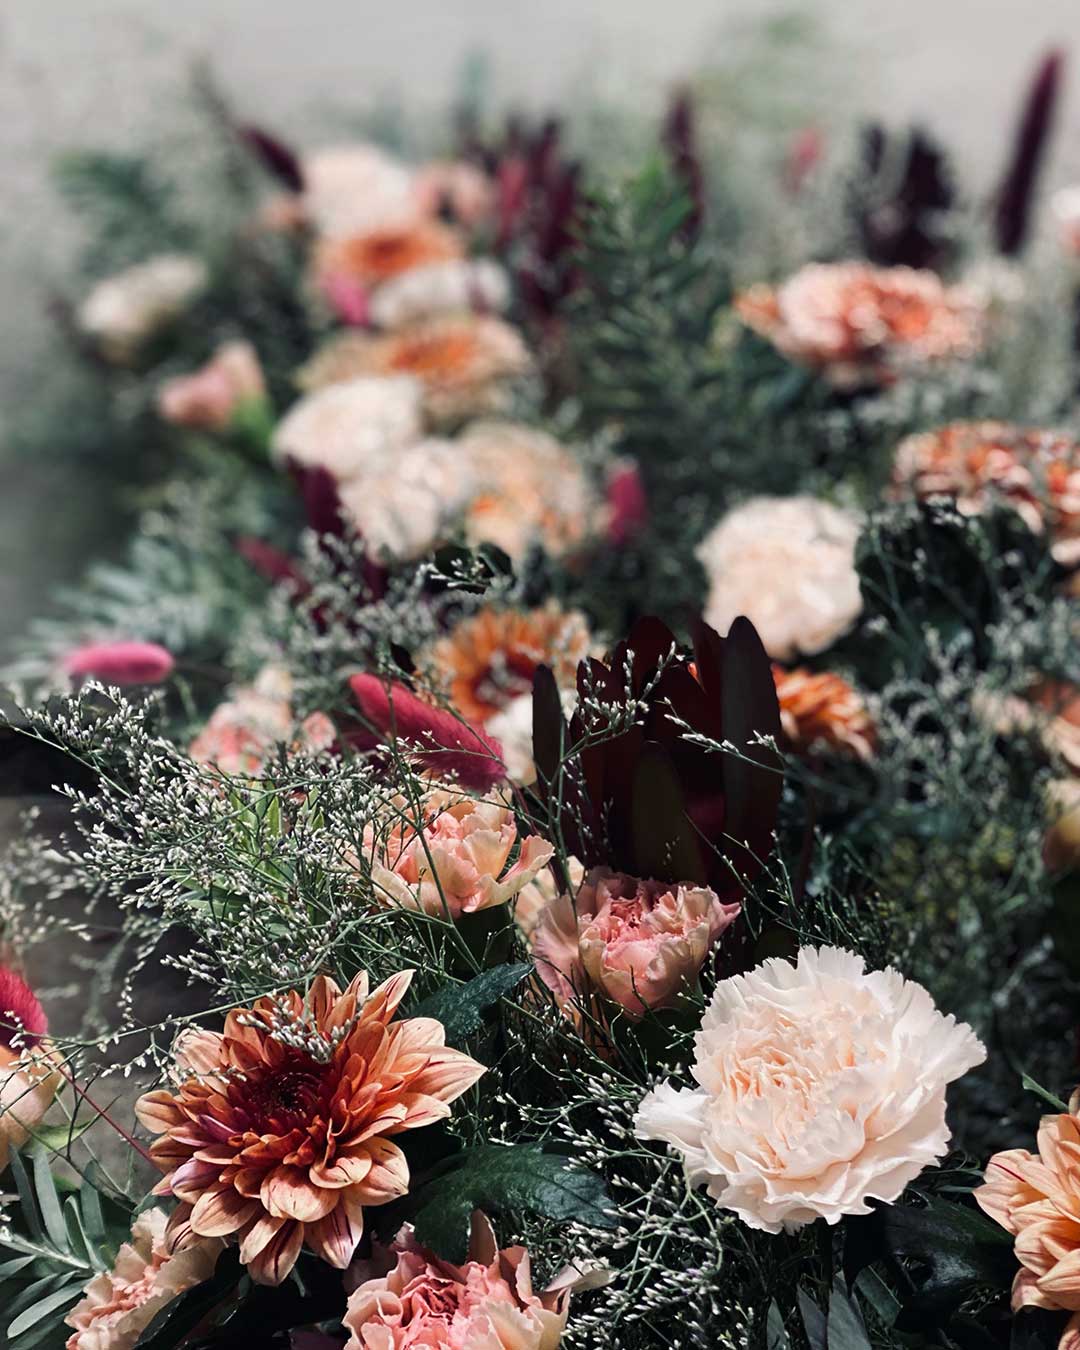 Blombud innehållandes krysantemum och rosor